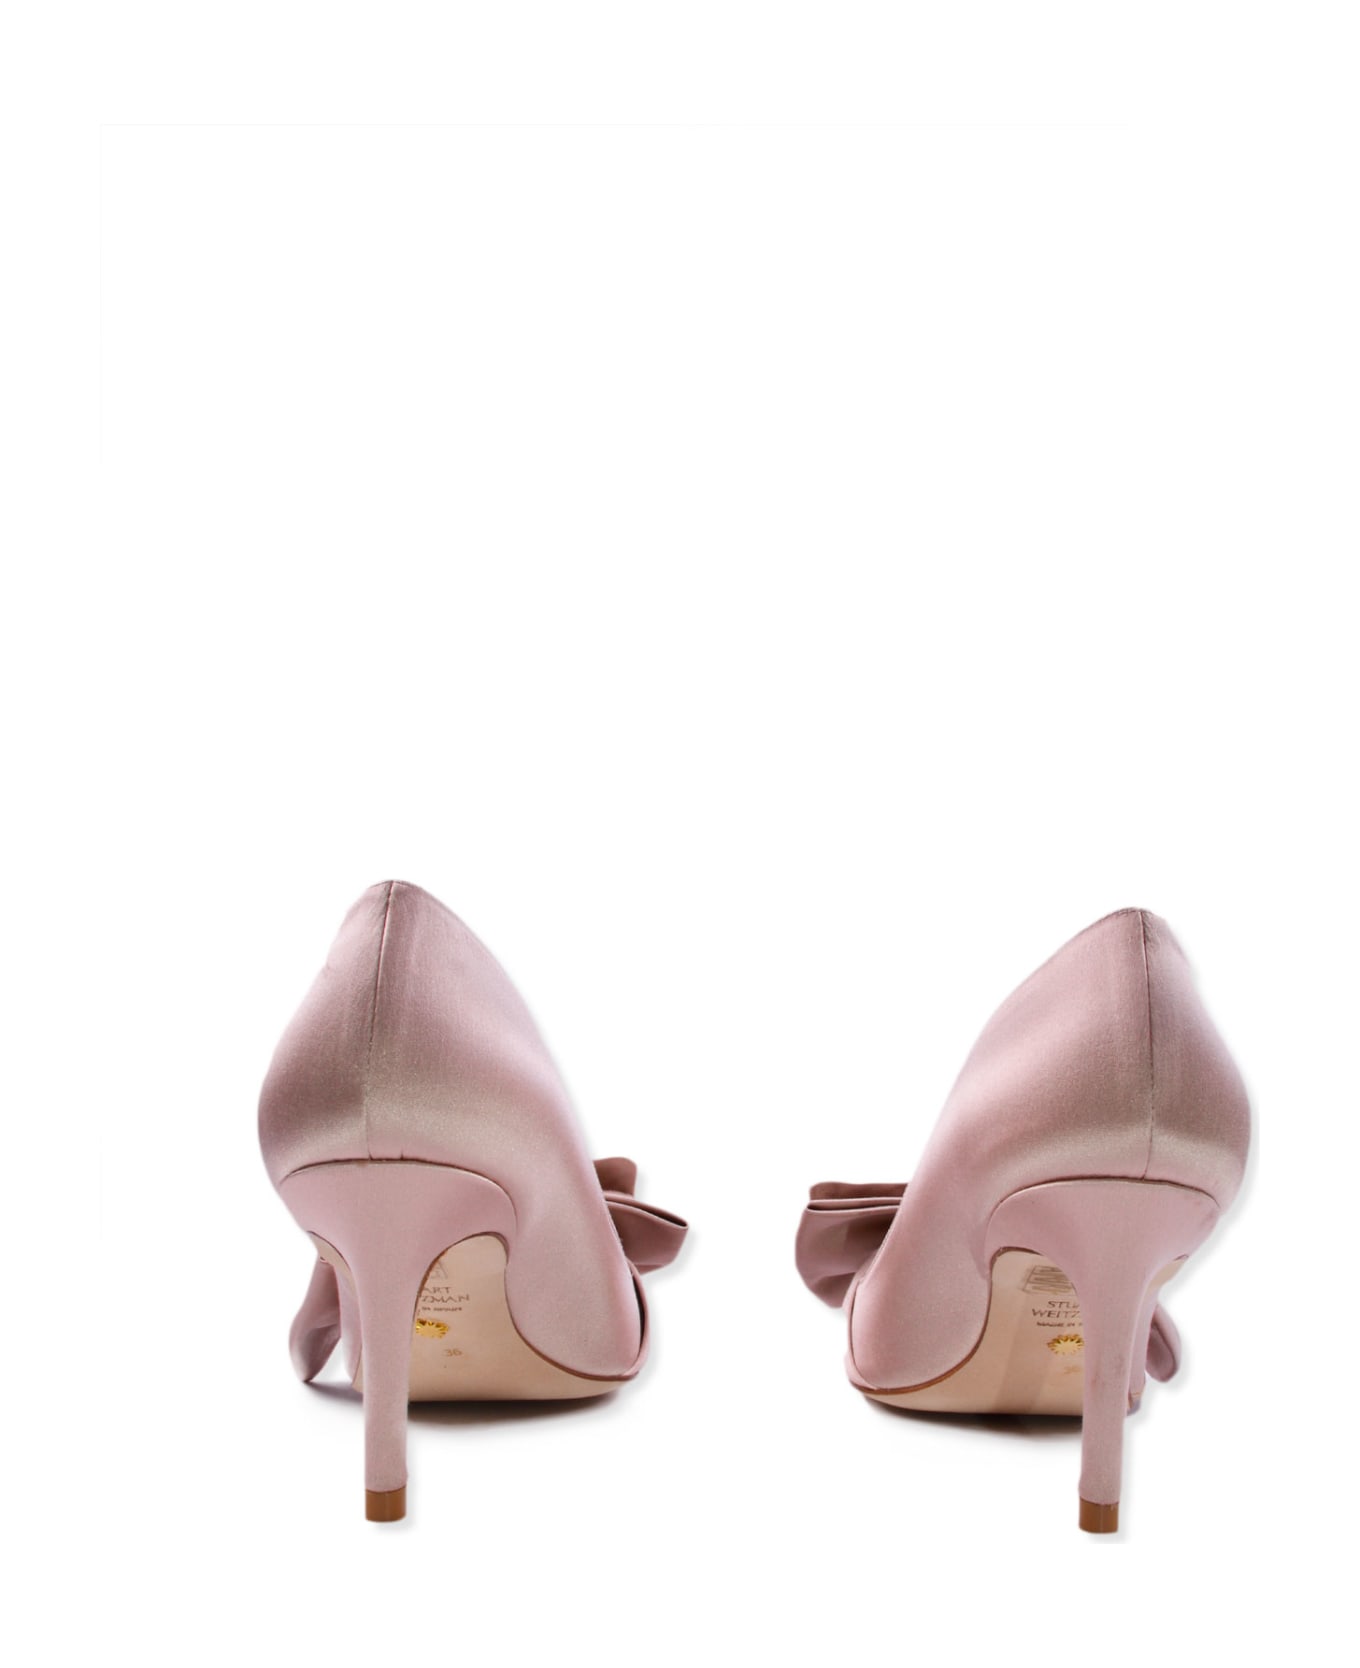 Stuart Weitzman Shoes With Heels - Pink ハイヒール